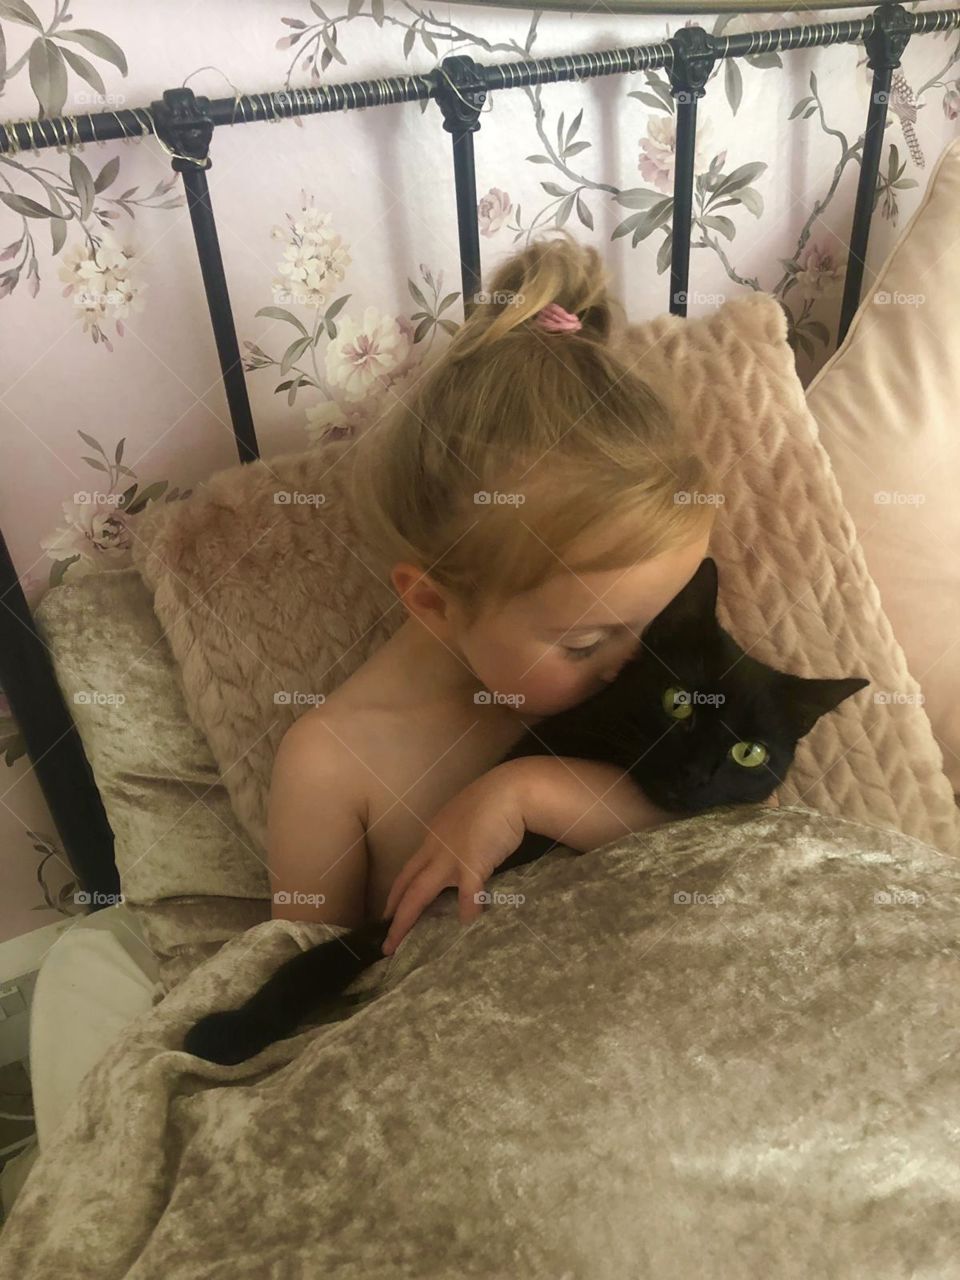 She loves her kitty 💕